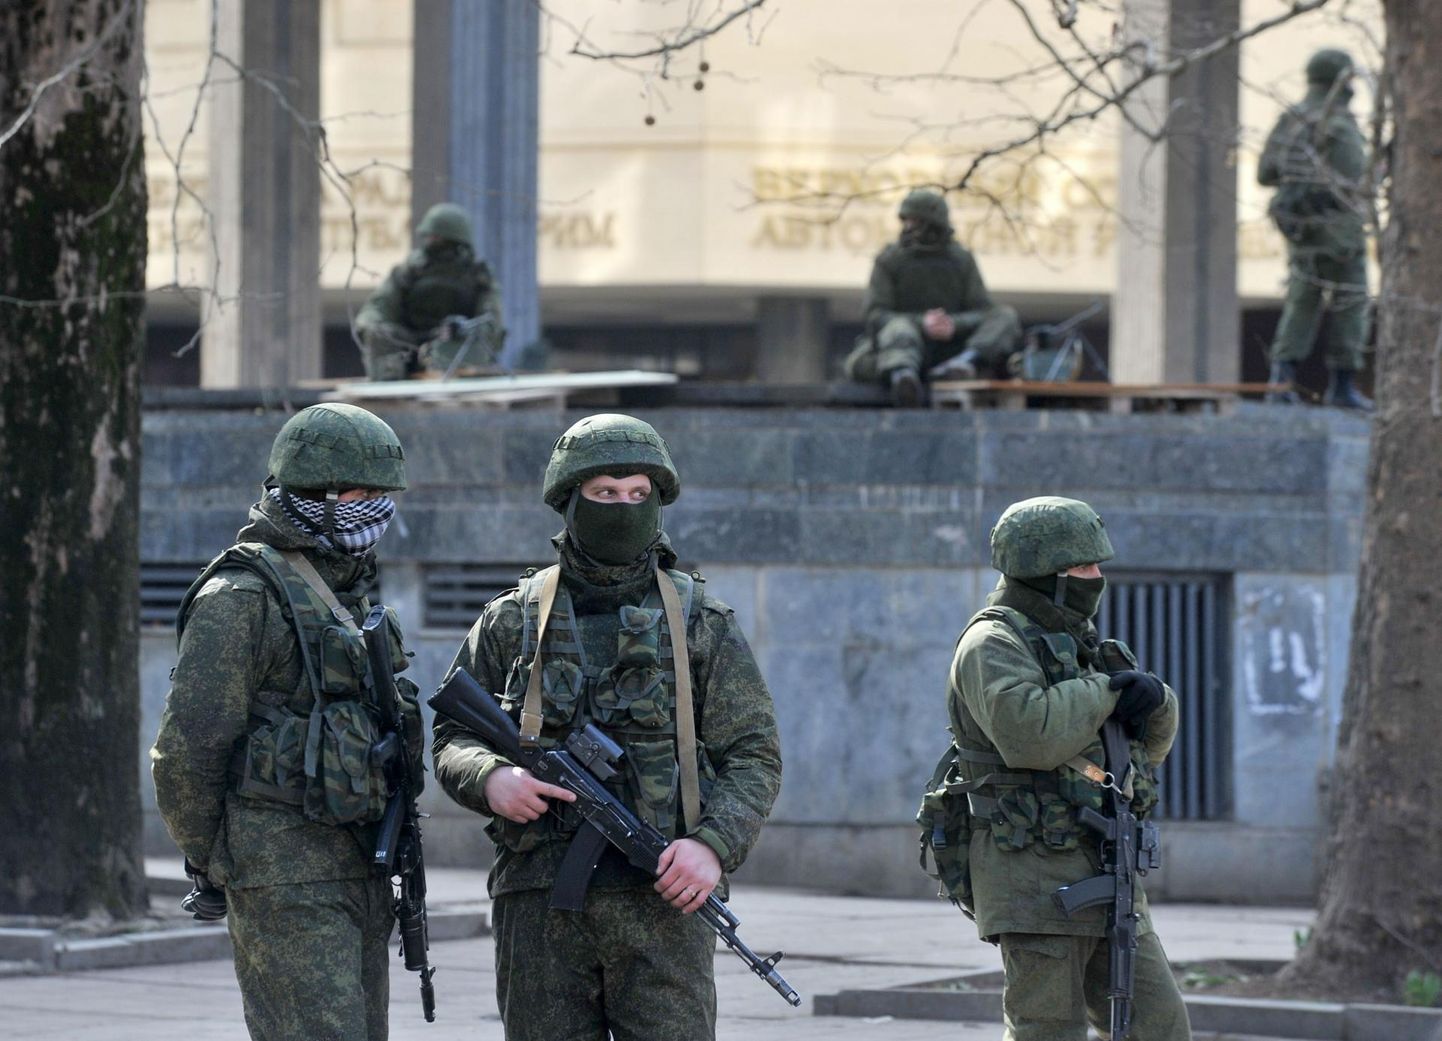 Nn rohelised mehikesed ehk eraldusmärkideta Venemaa
sõjaväelased võtsid 2014 märtsi alguses oma kontrolli alla Krimmi parlamendi hoone.